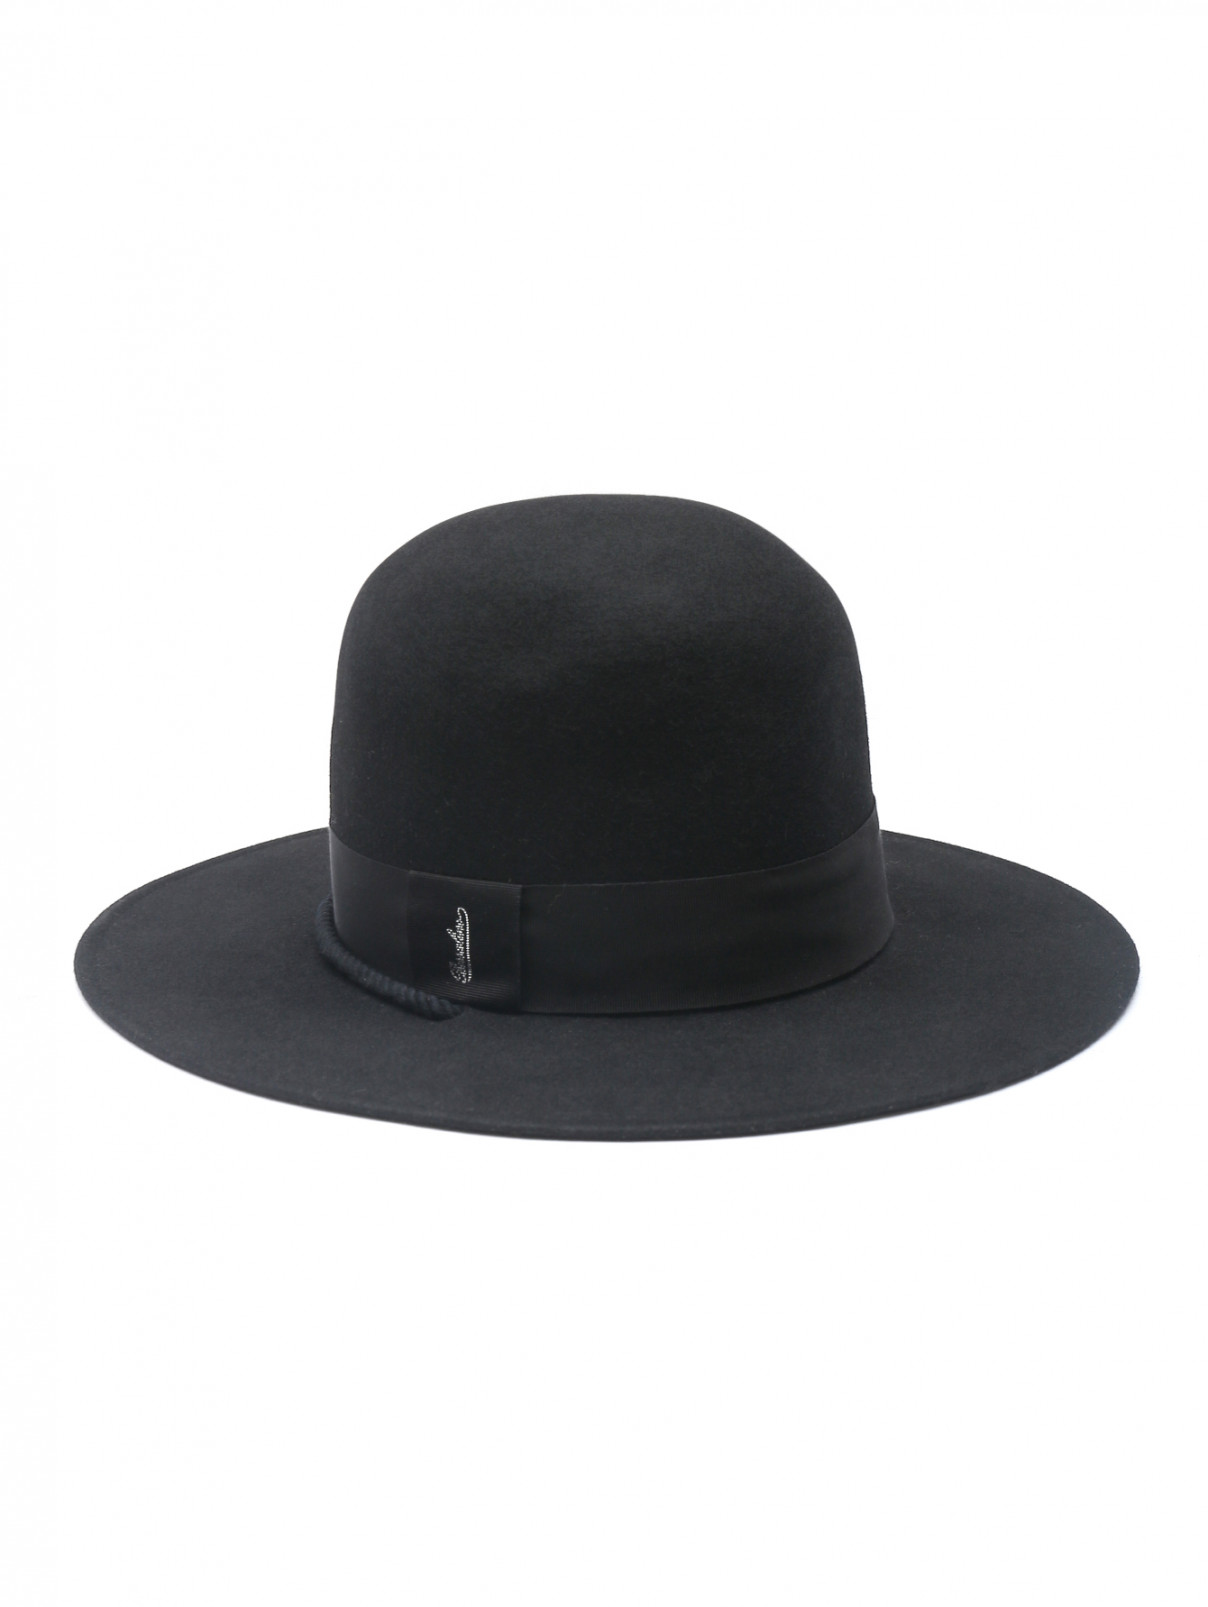 Шляпа фетровая с шнурком Borsalino  –  Общий вид  – Цвет:  Черный